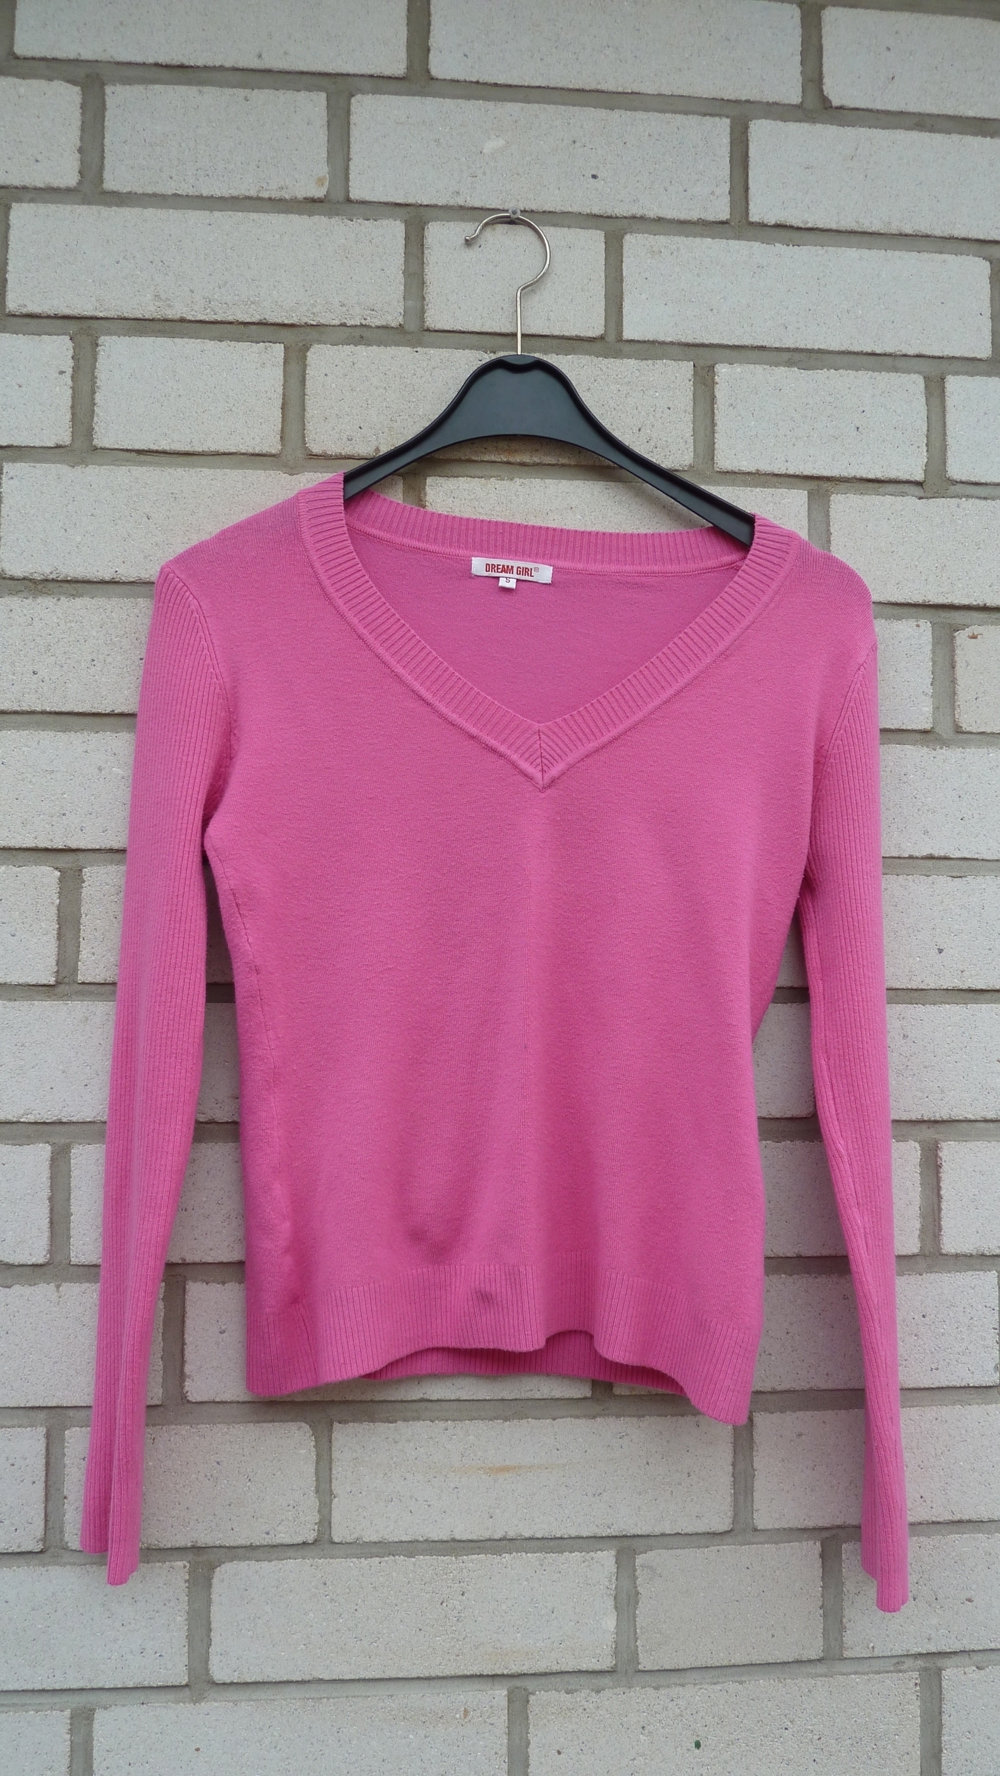 Pullover pink, V-Ausschnitt, Dream Girl, 90% Viskose, Gr. S